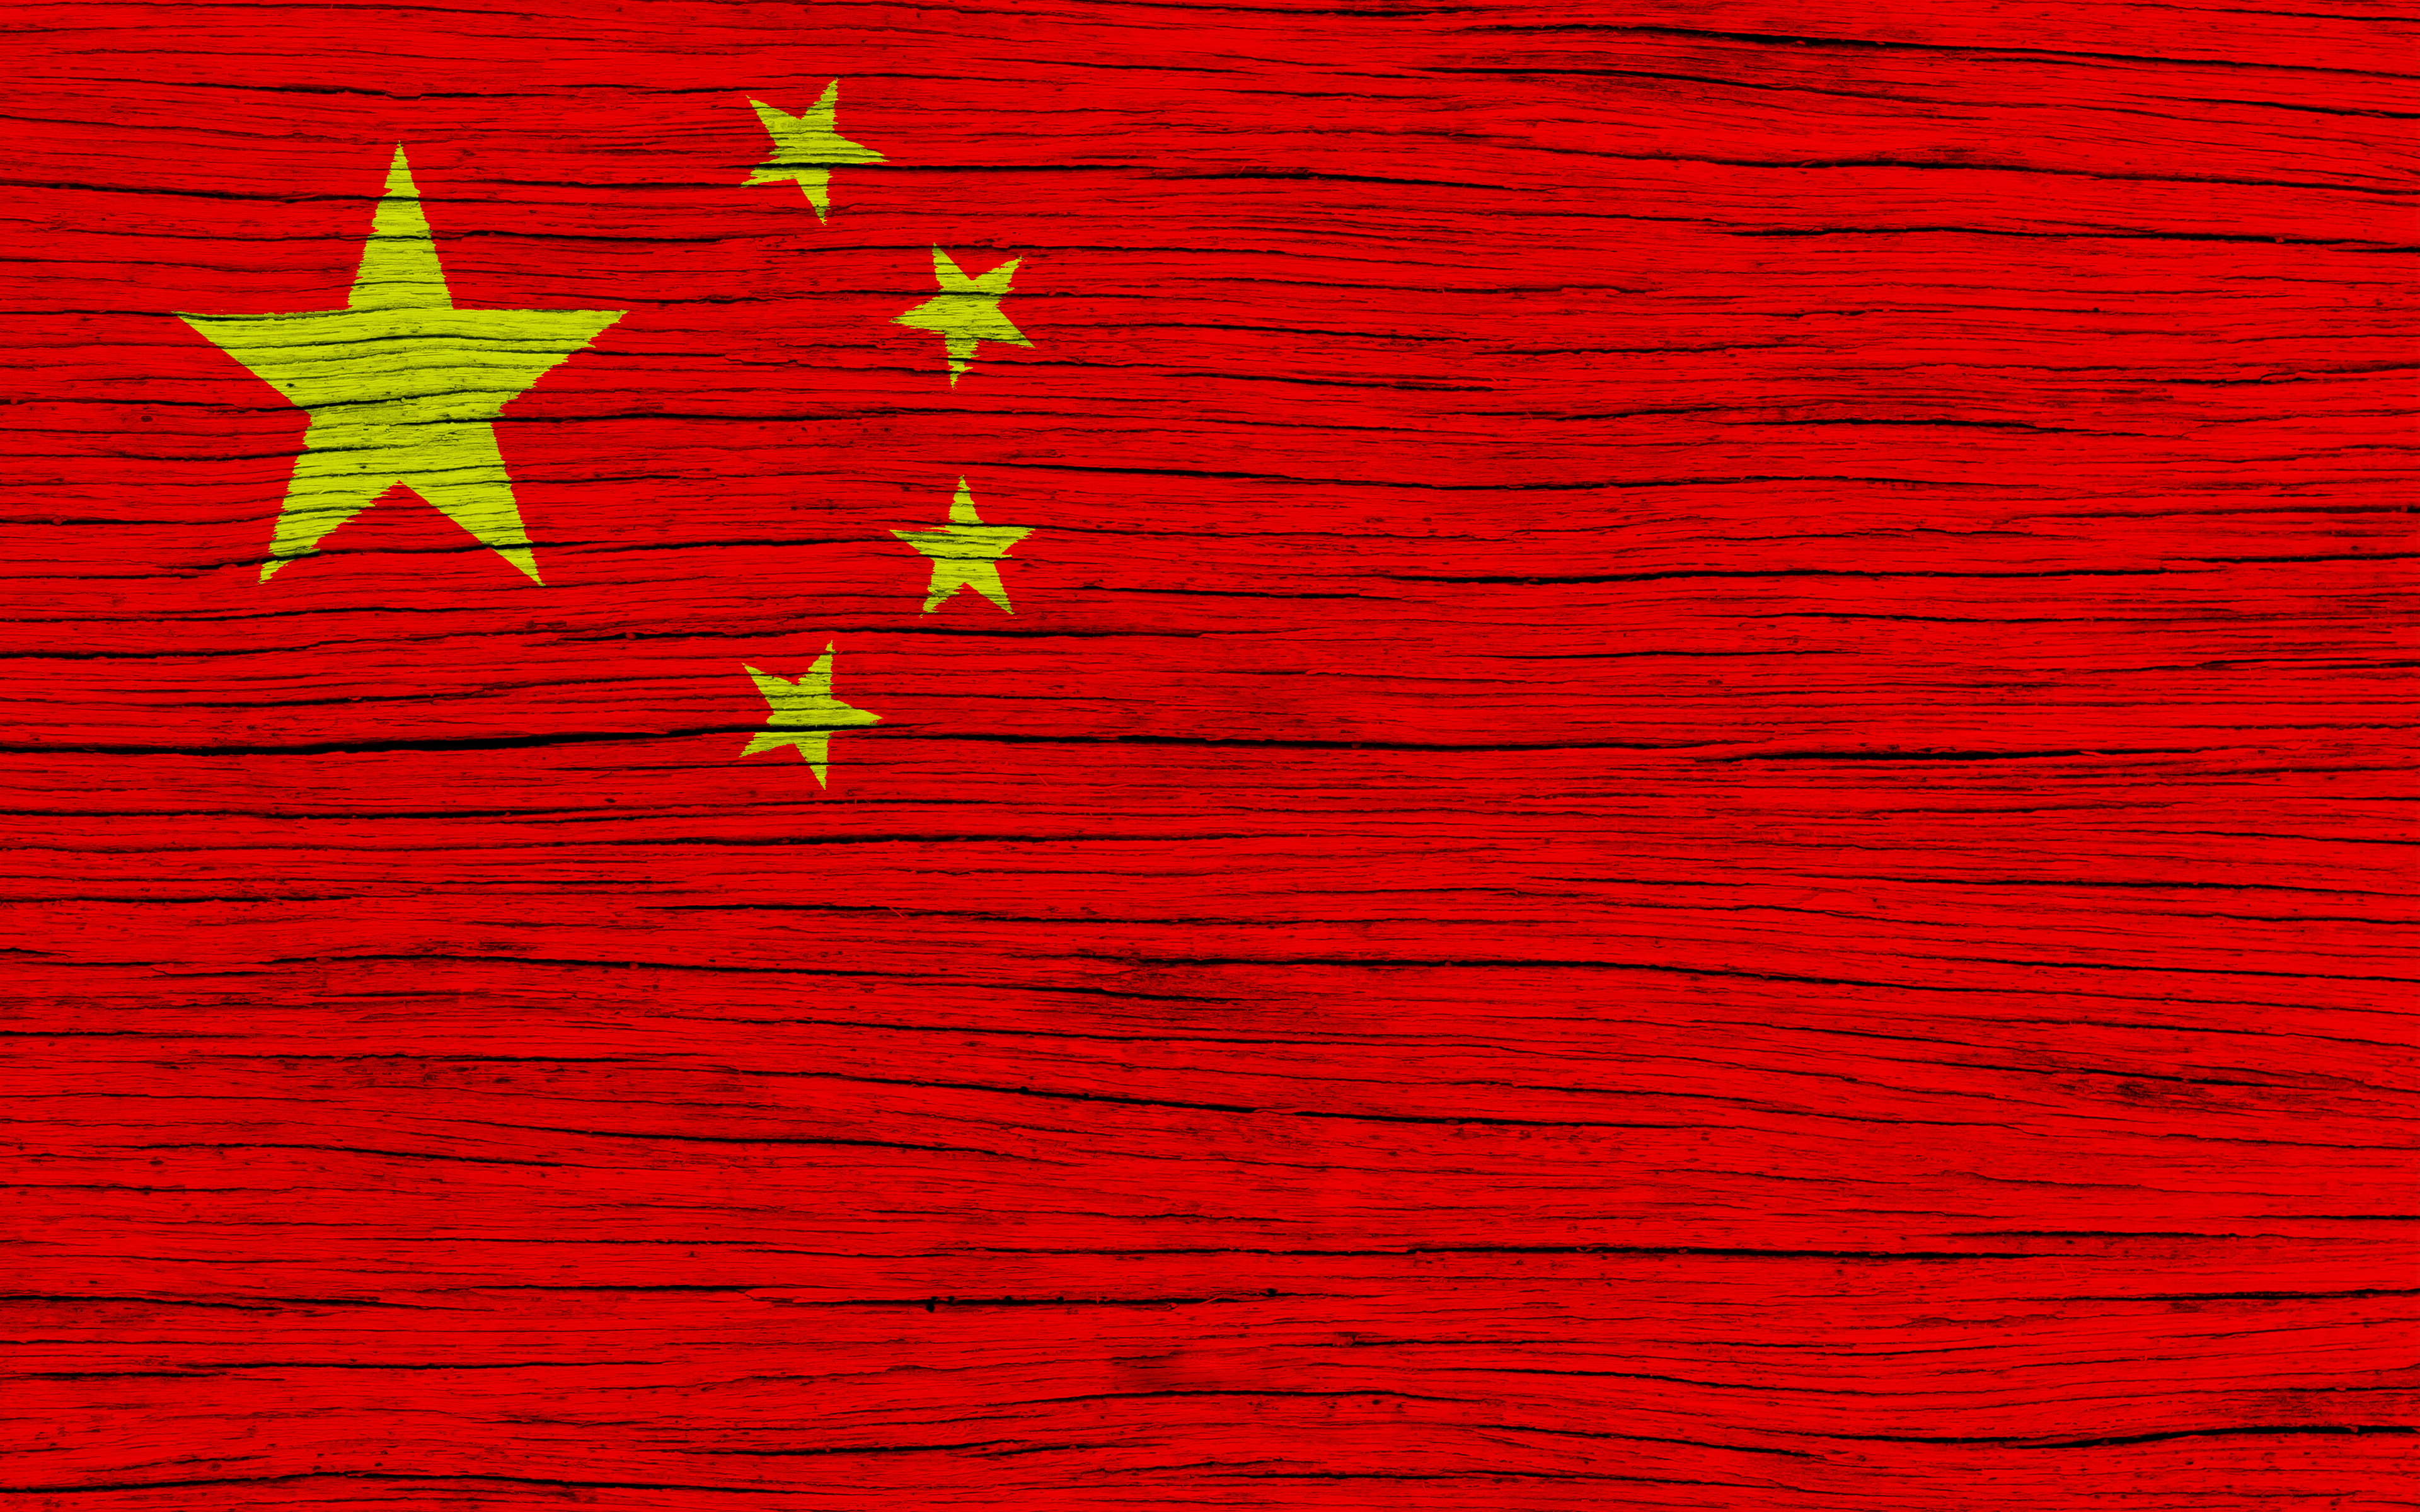 Скачать обои бесплатно Разное, Флаг, Флаг Китая картинка на рабочий стол ПК